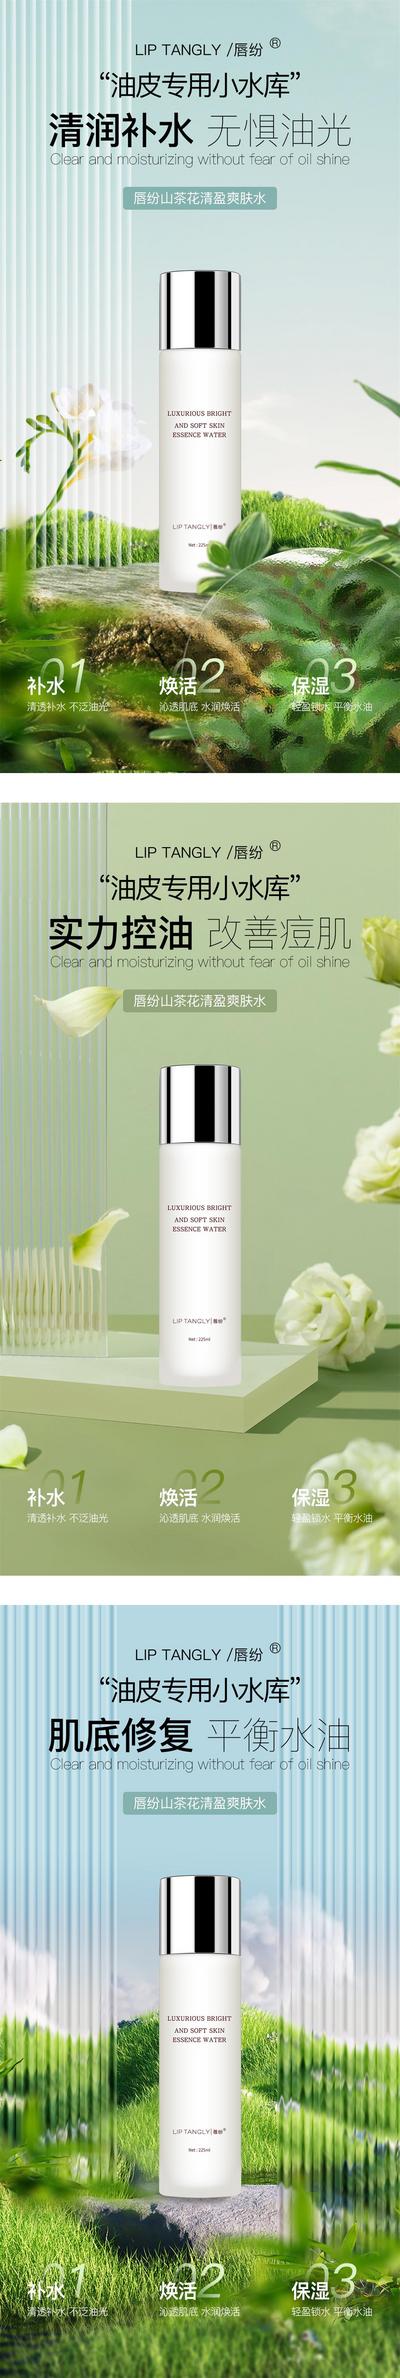 南门网 广告 海报 电商 化妆品 淘宝 护肤品 产品 植物 小清新 系列